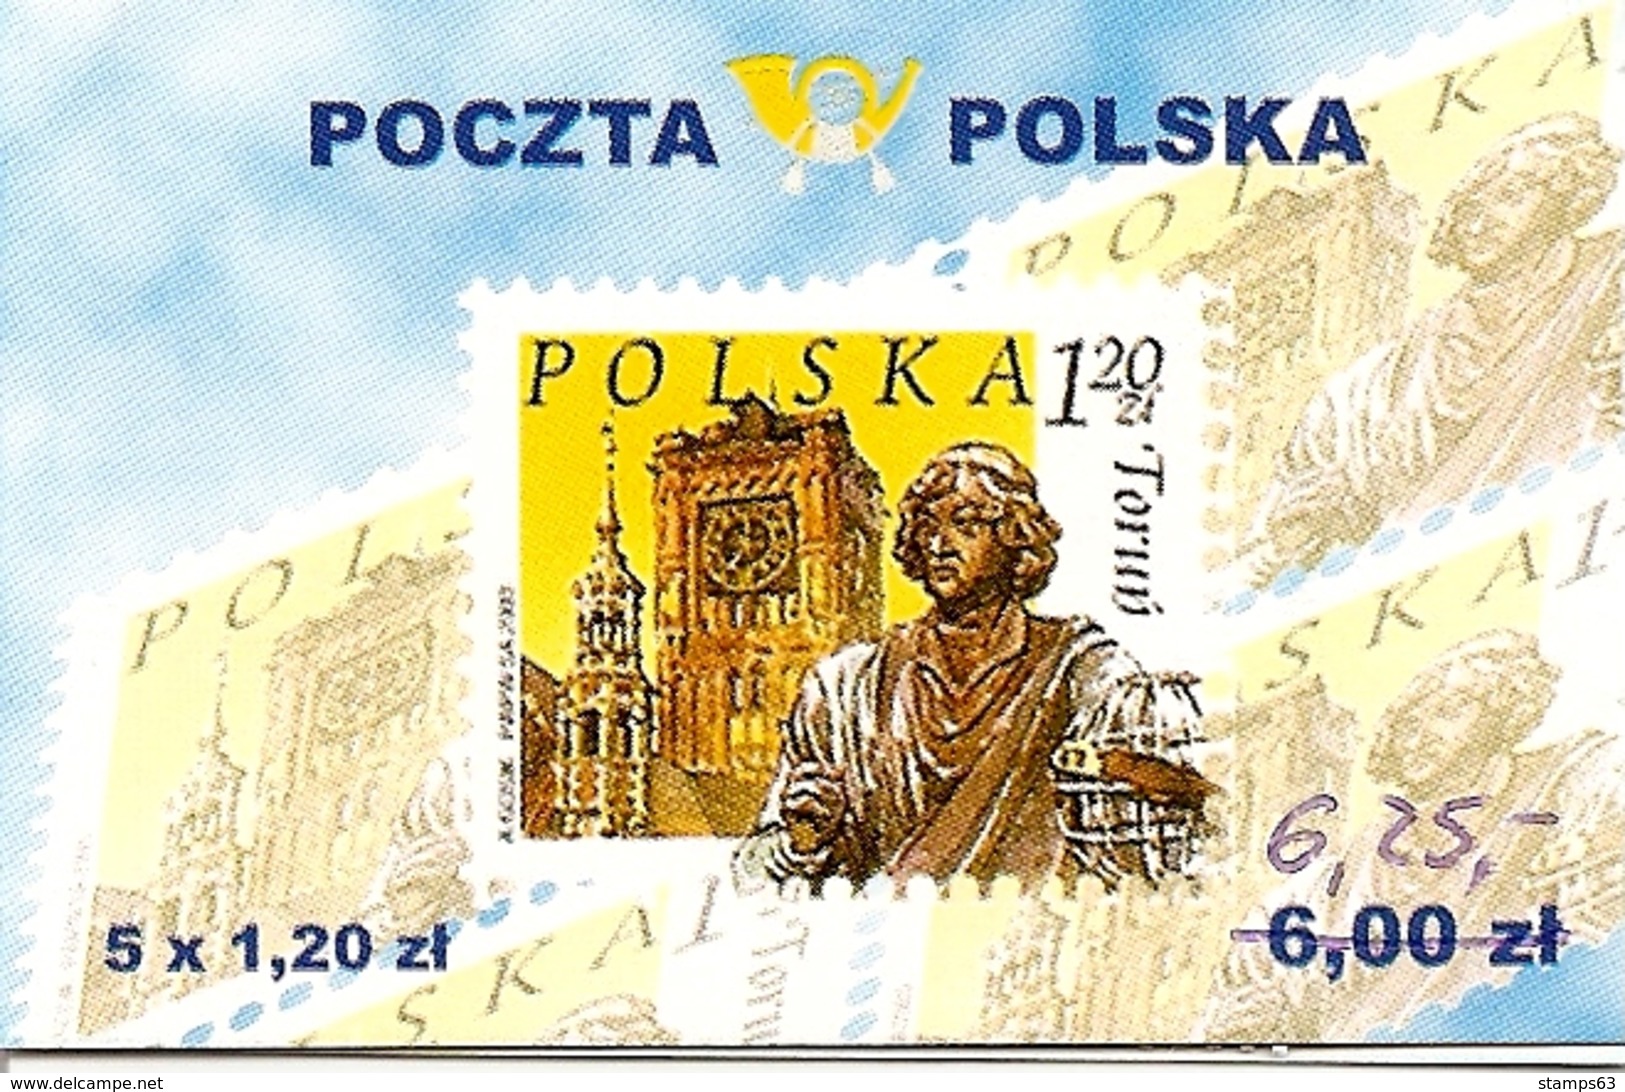 POLAND / POLEN, 2004, Booklet 53a,  5x1.20 Torun + 5x5 Gr - Carnets